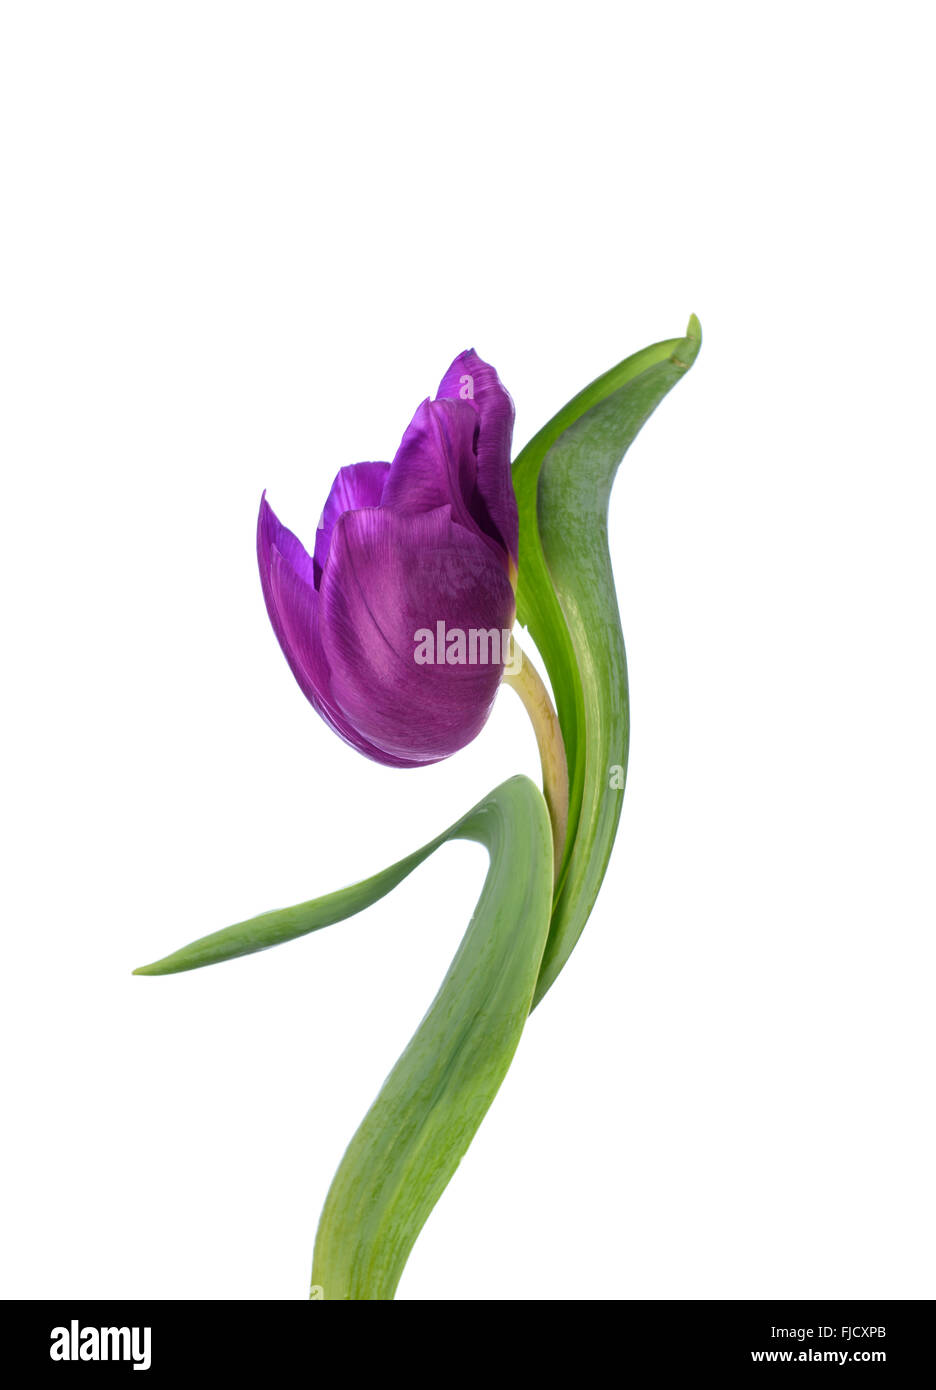 Una Fotografia manipolata digitalmente di un viola tulip flower contro uno sfondo bianco Foto Stock